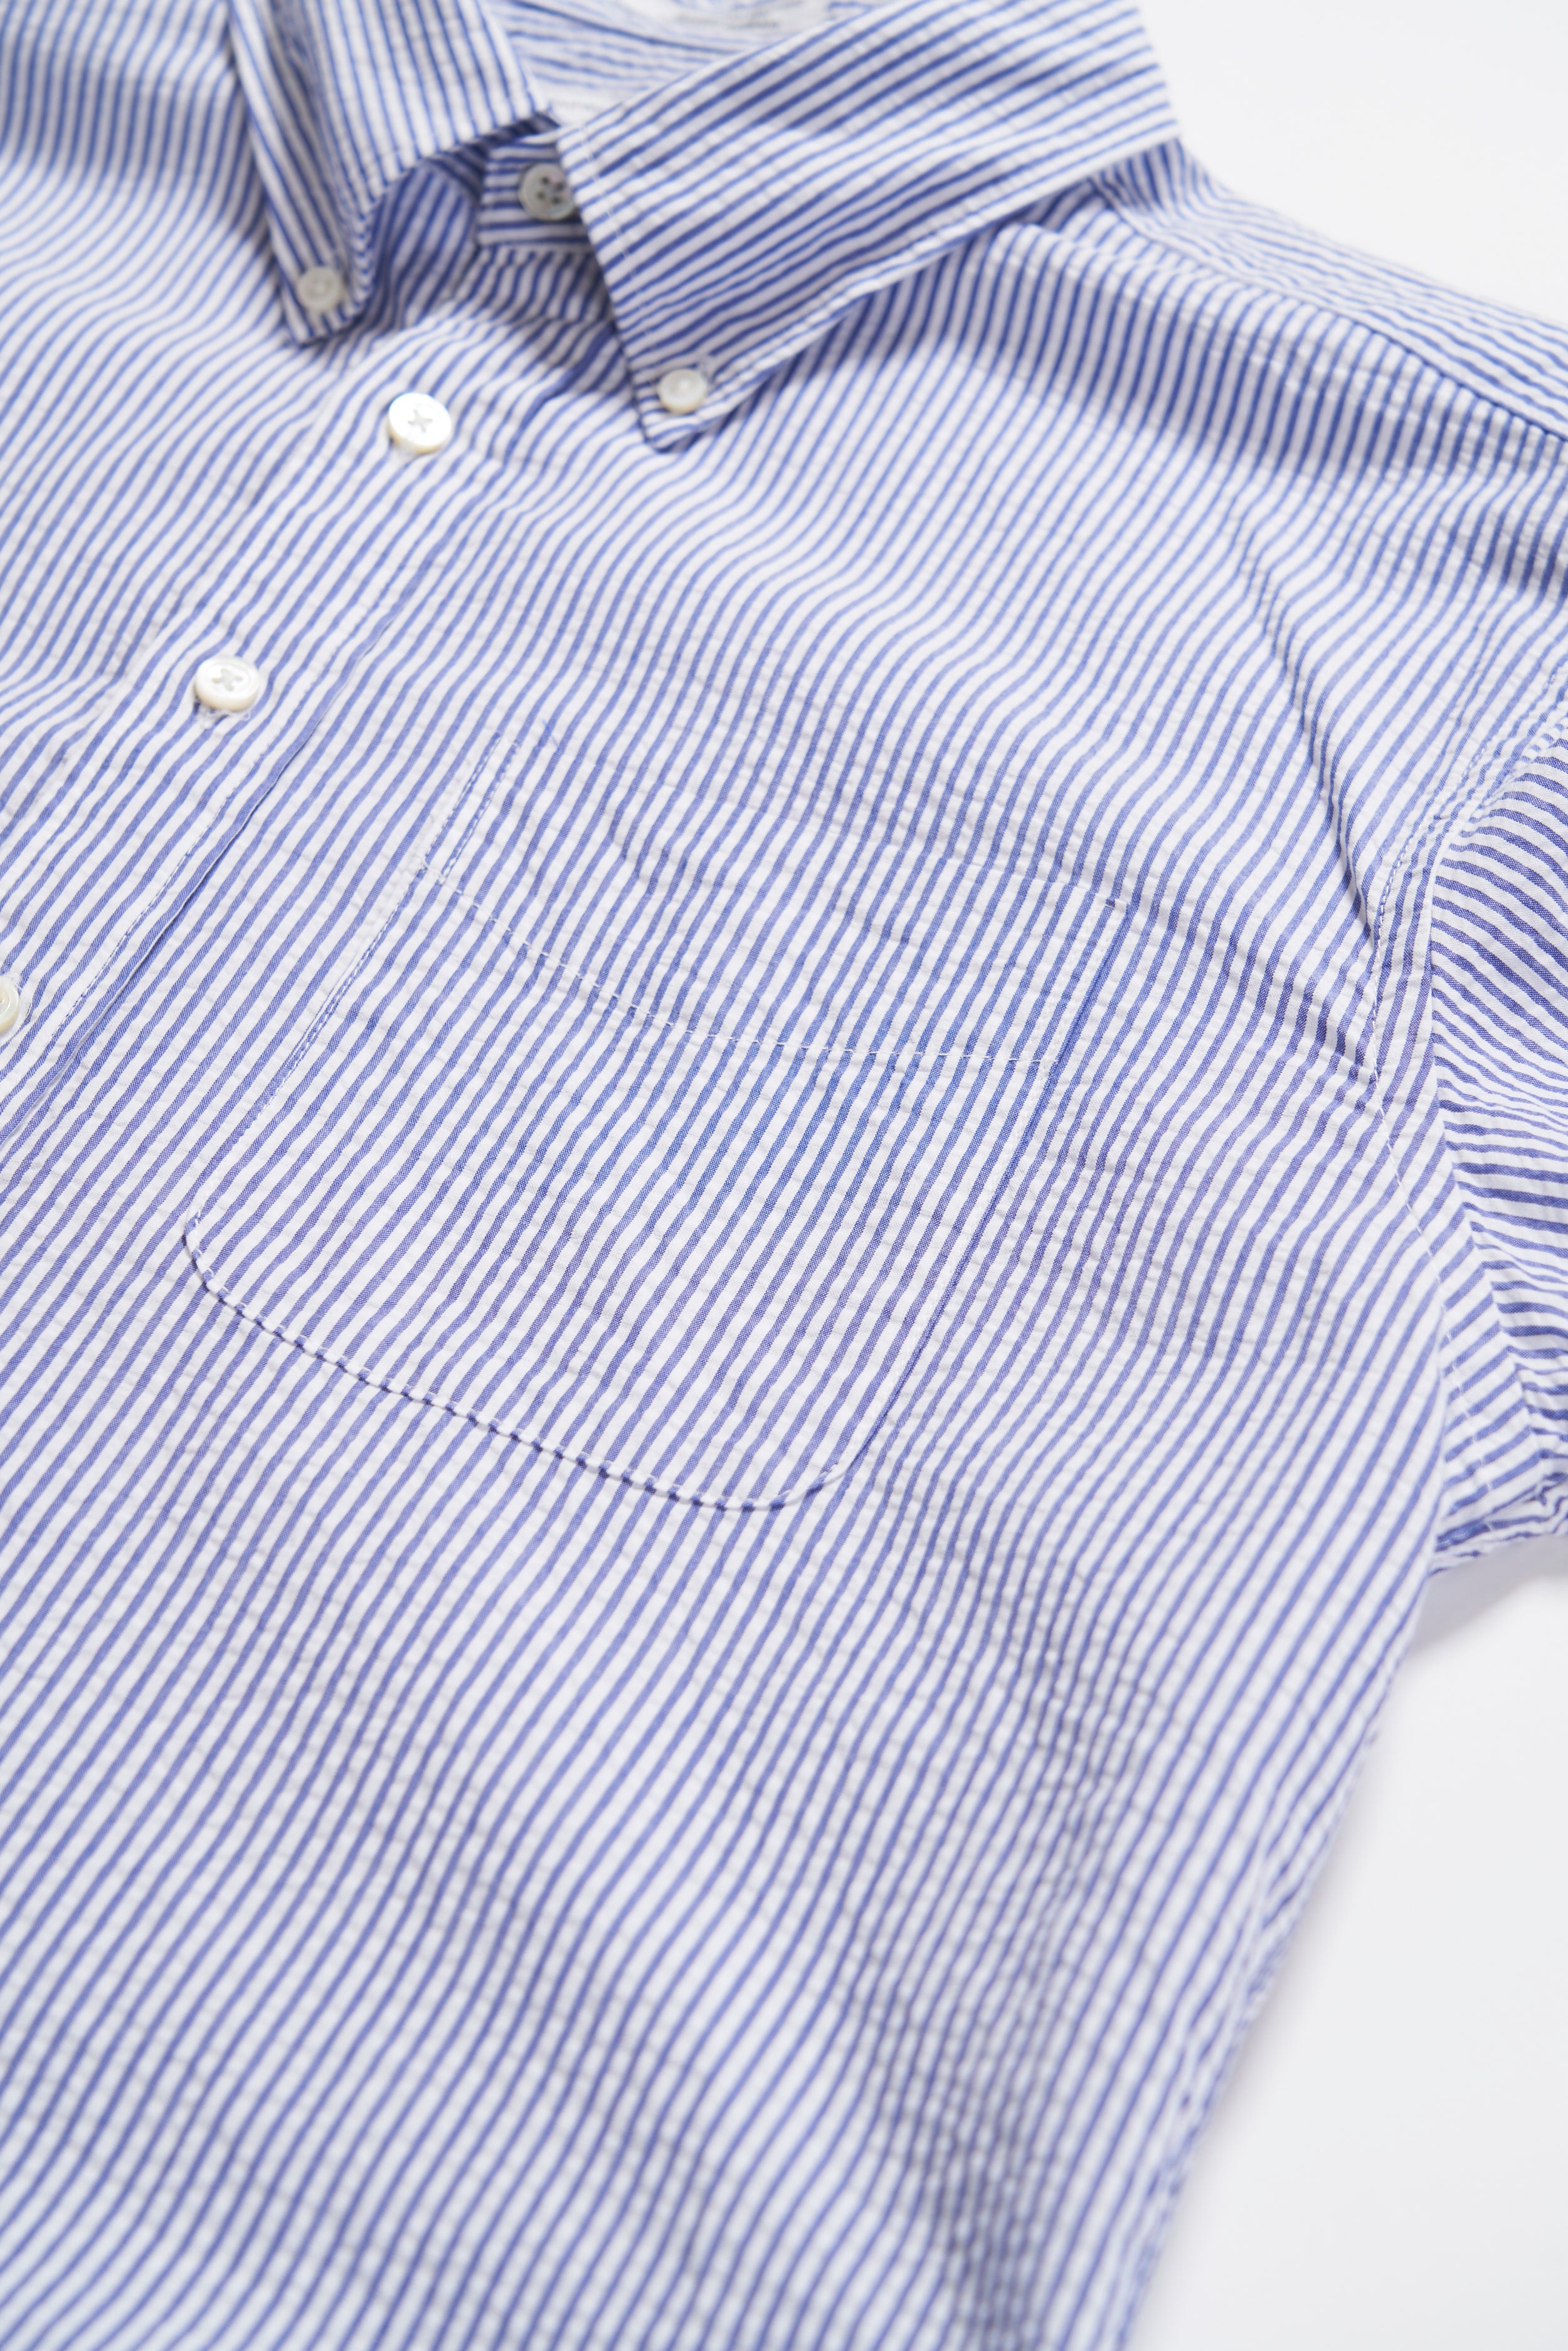 19 Century BD Shirt - Blue / White Cotton Seersucker